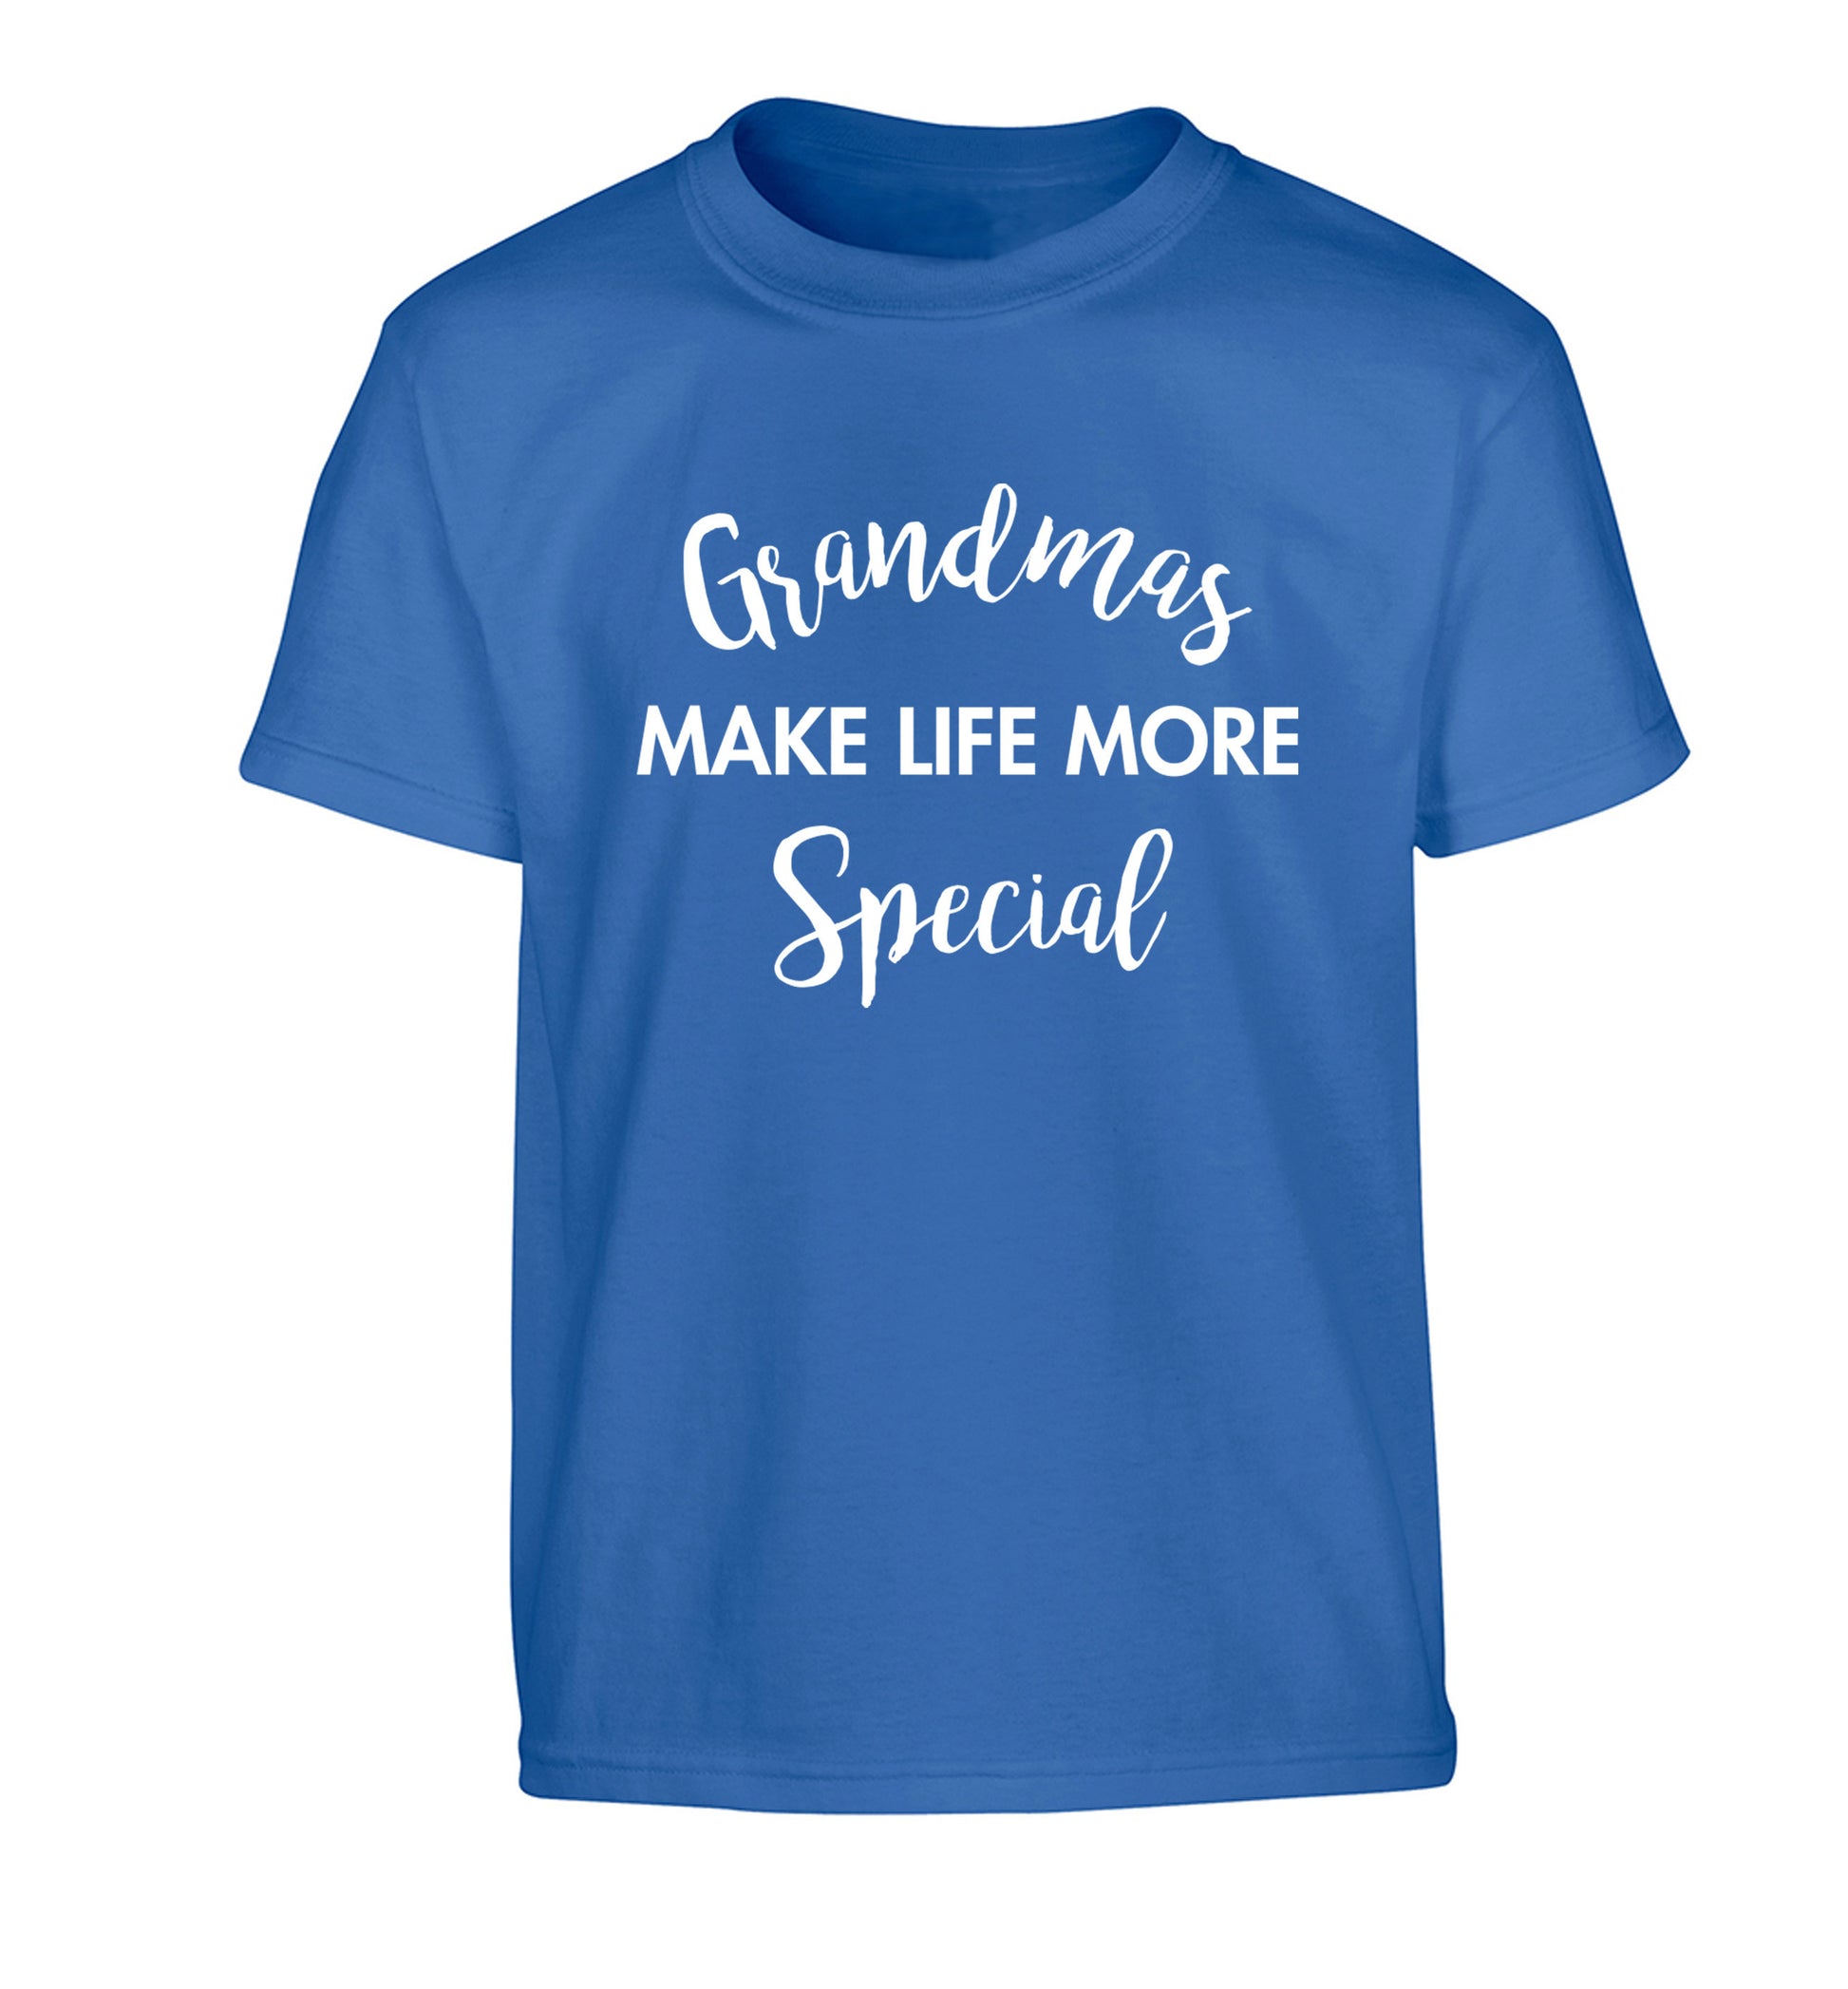 Grandmas make life more special Children's blue Tshirt 12-14 Years